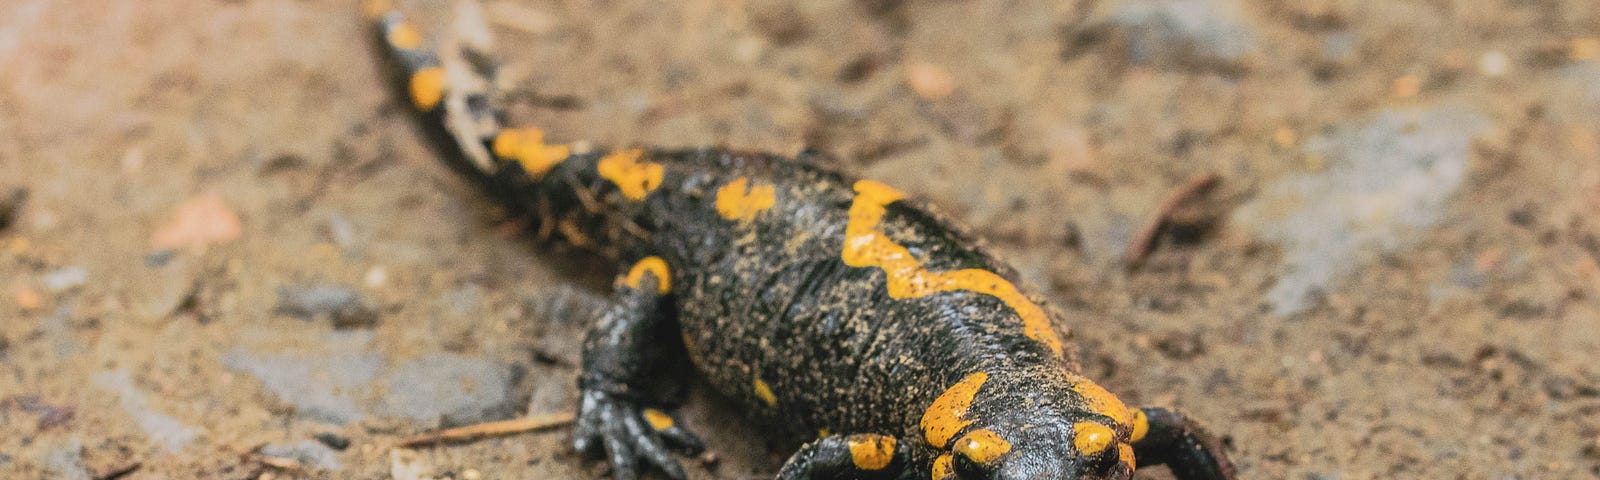 A Tiger Salamander walking through mud